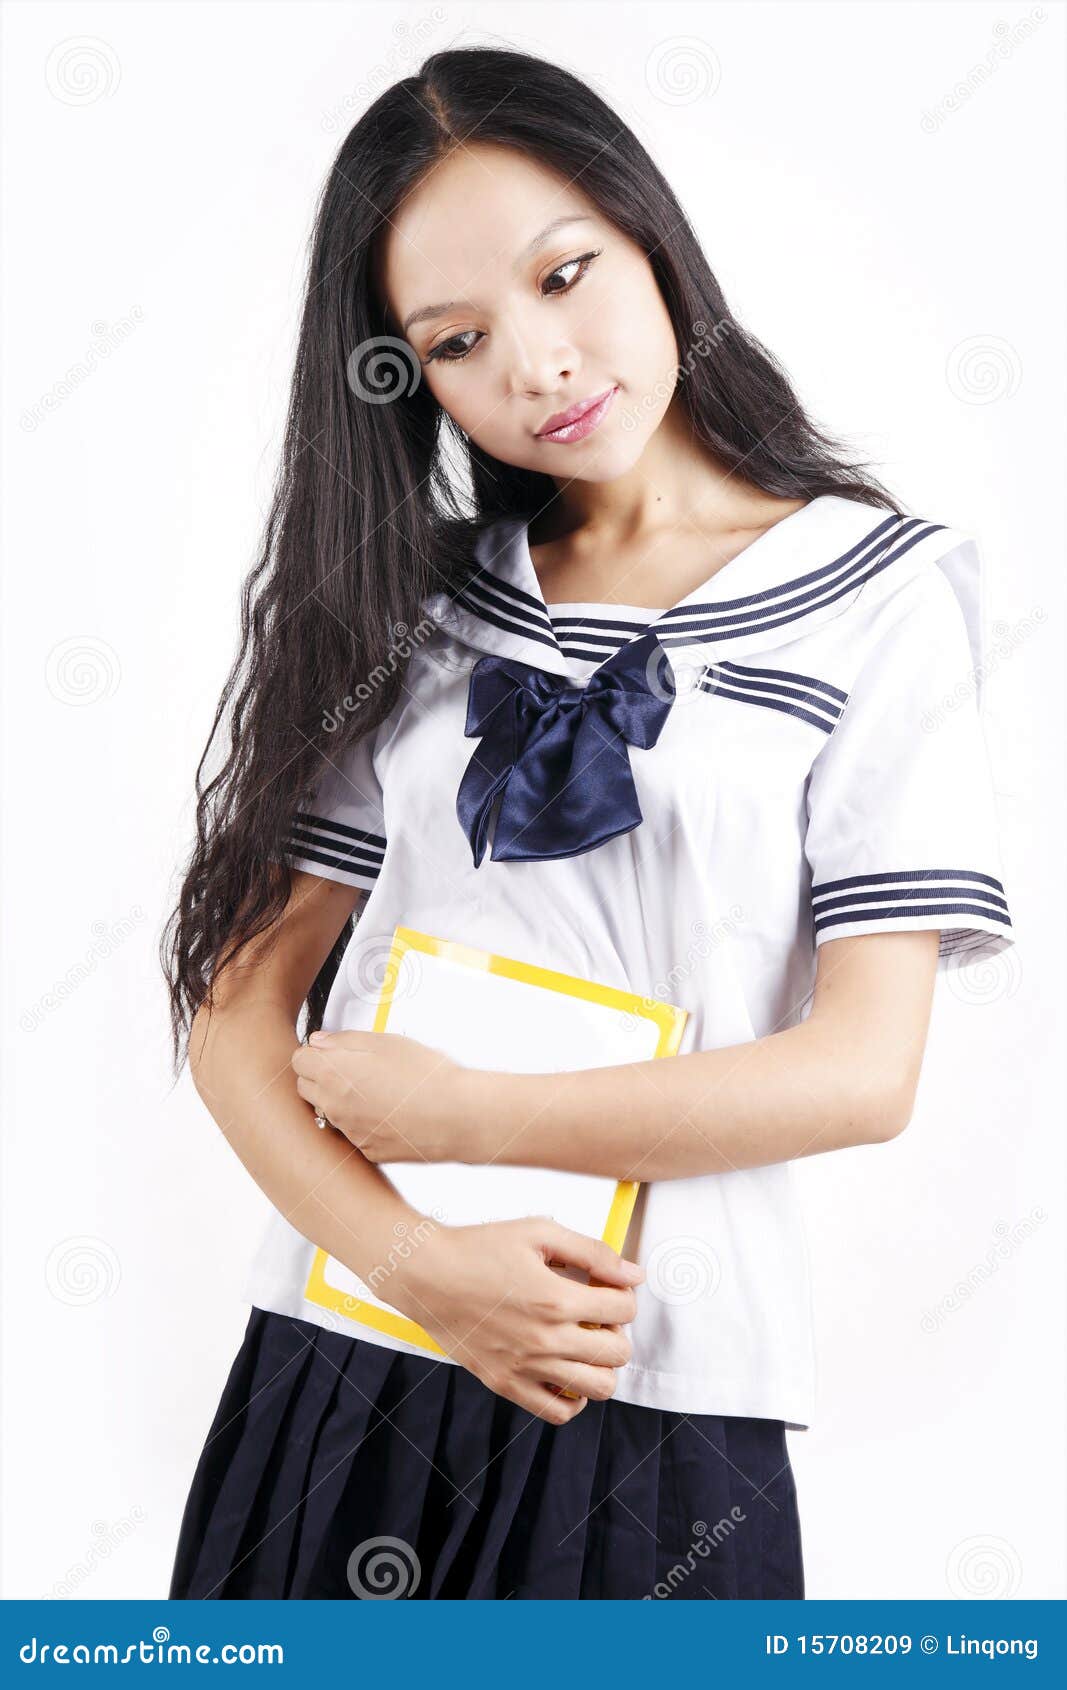 asian schoolgirl